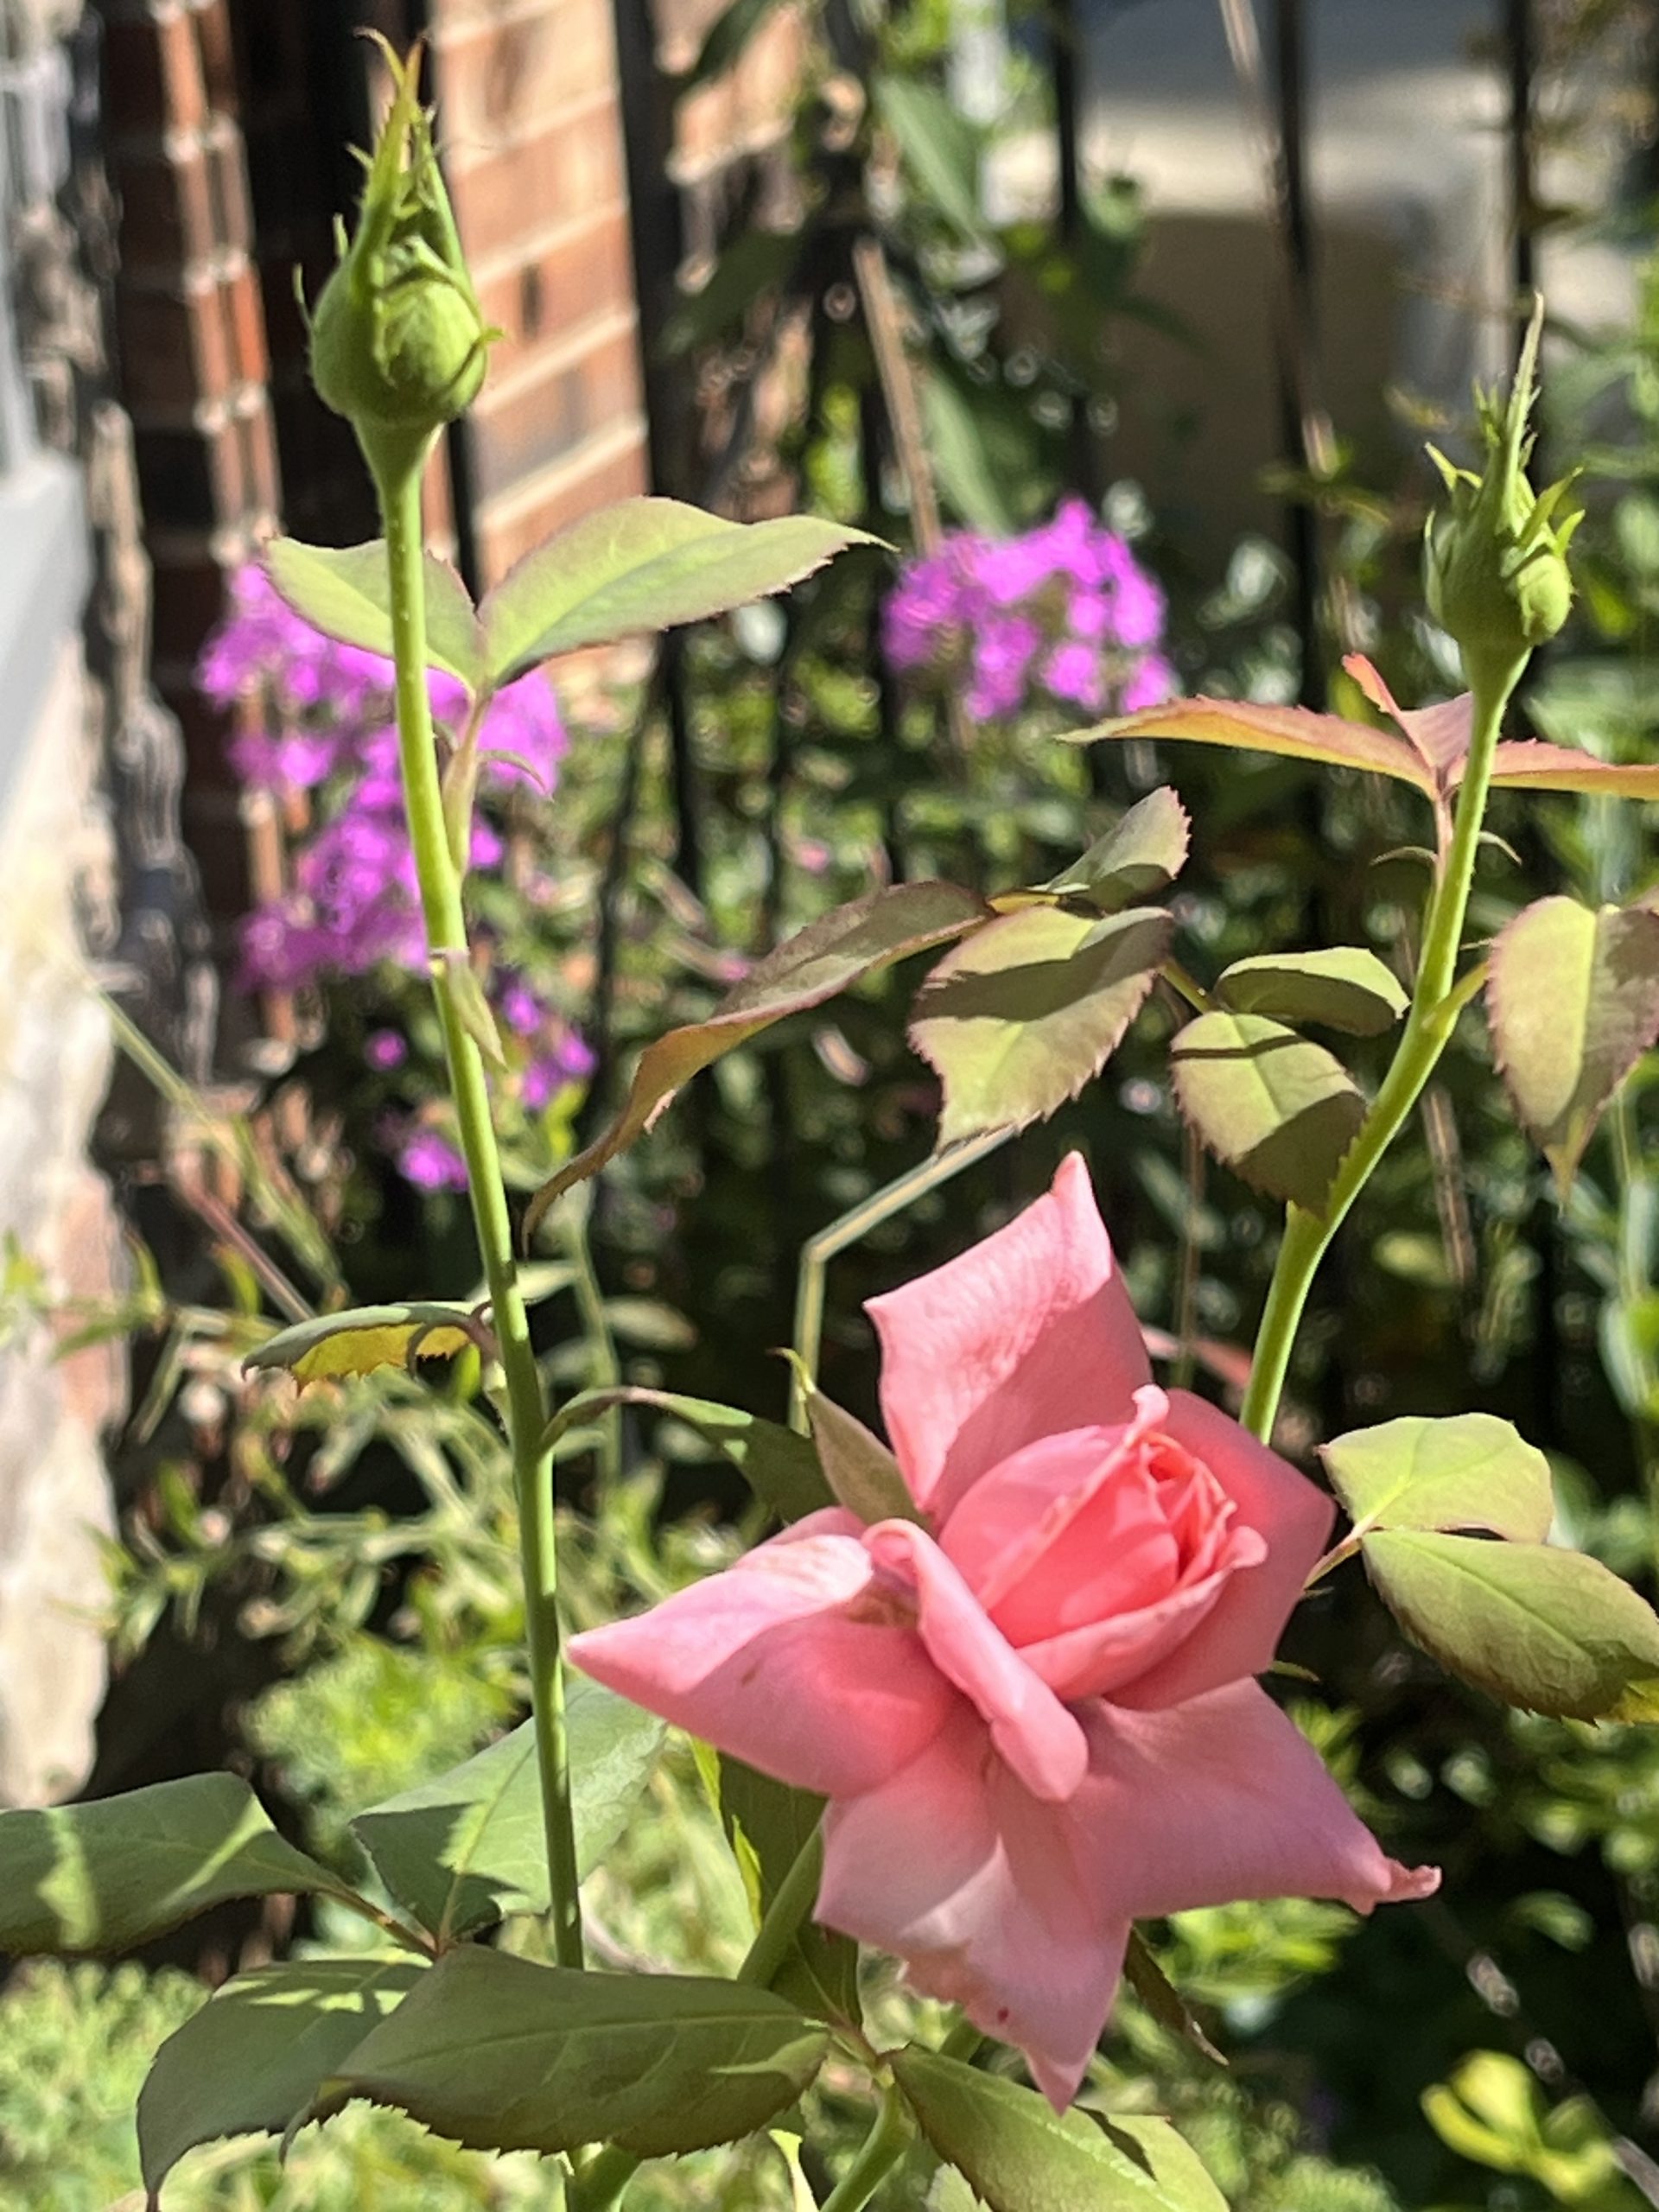 Finding Joy in the Garden